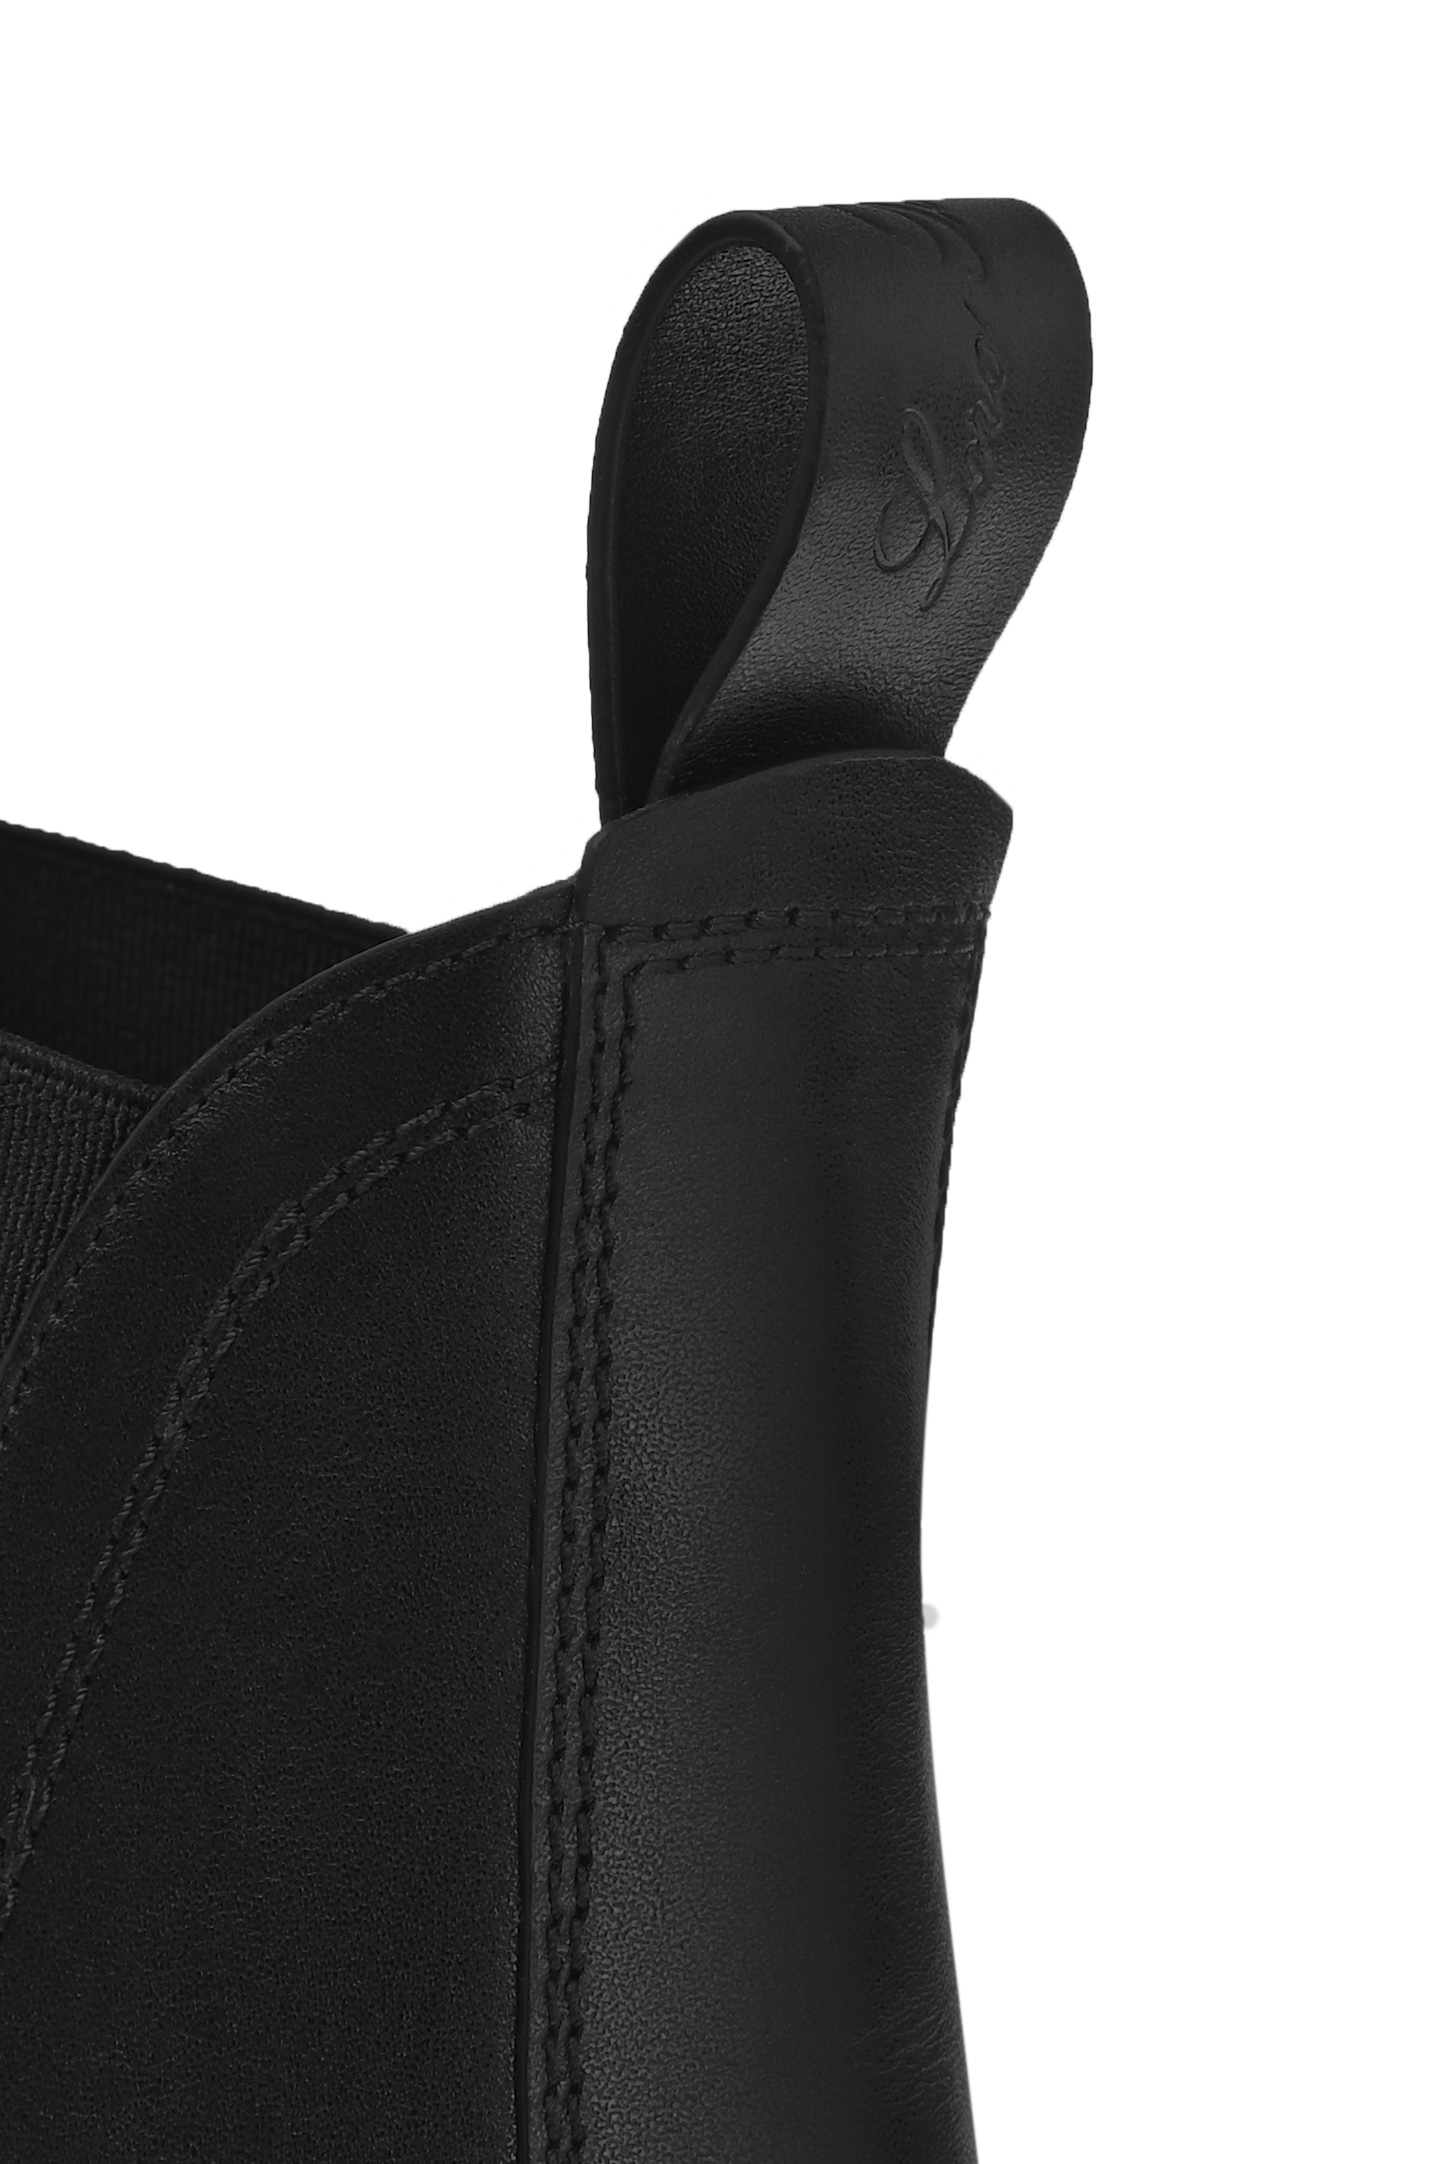 Ботинки LORO PIANA FAM9950, цвет: Черный, Женский